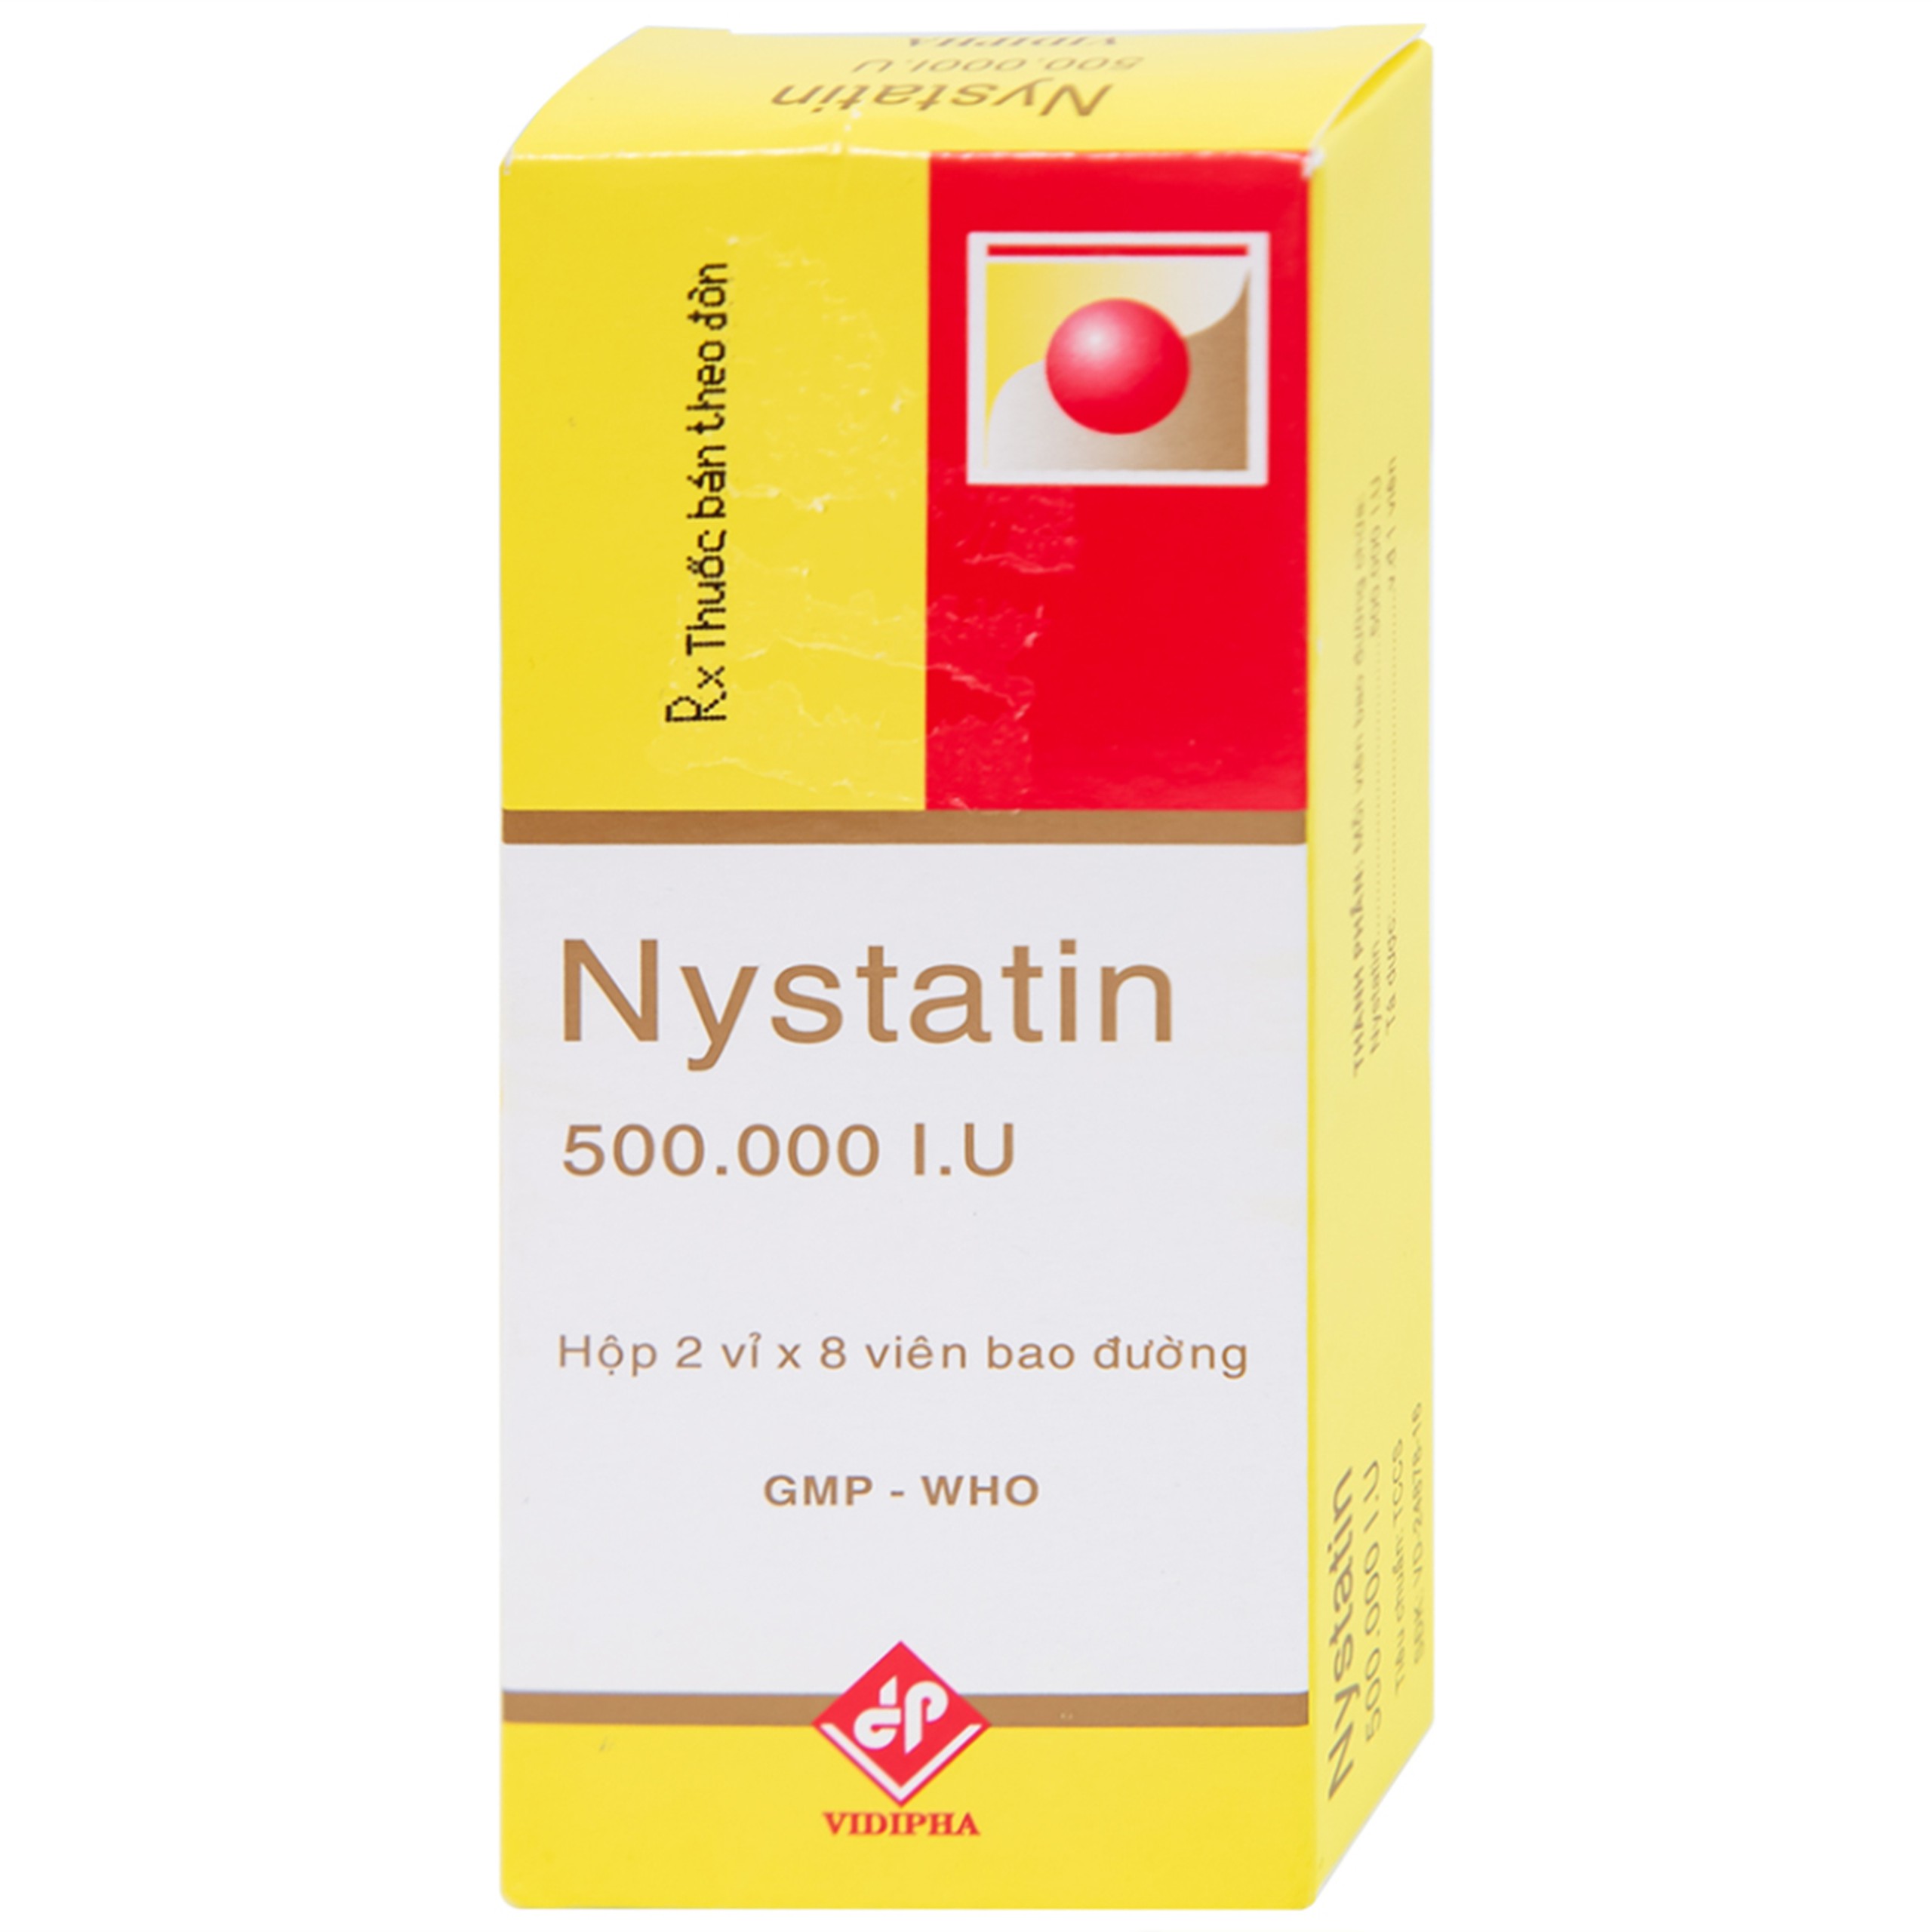 Thuốc Nystatin 500.000I.U Vidipha dự phòng và điều trị nhiễm nấm Candida (2 vỉ x 8 viên) 